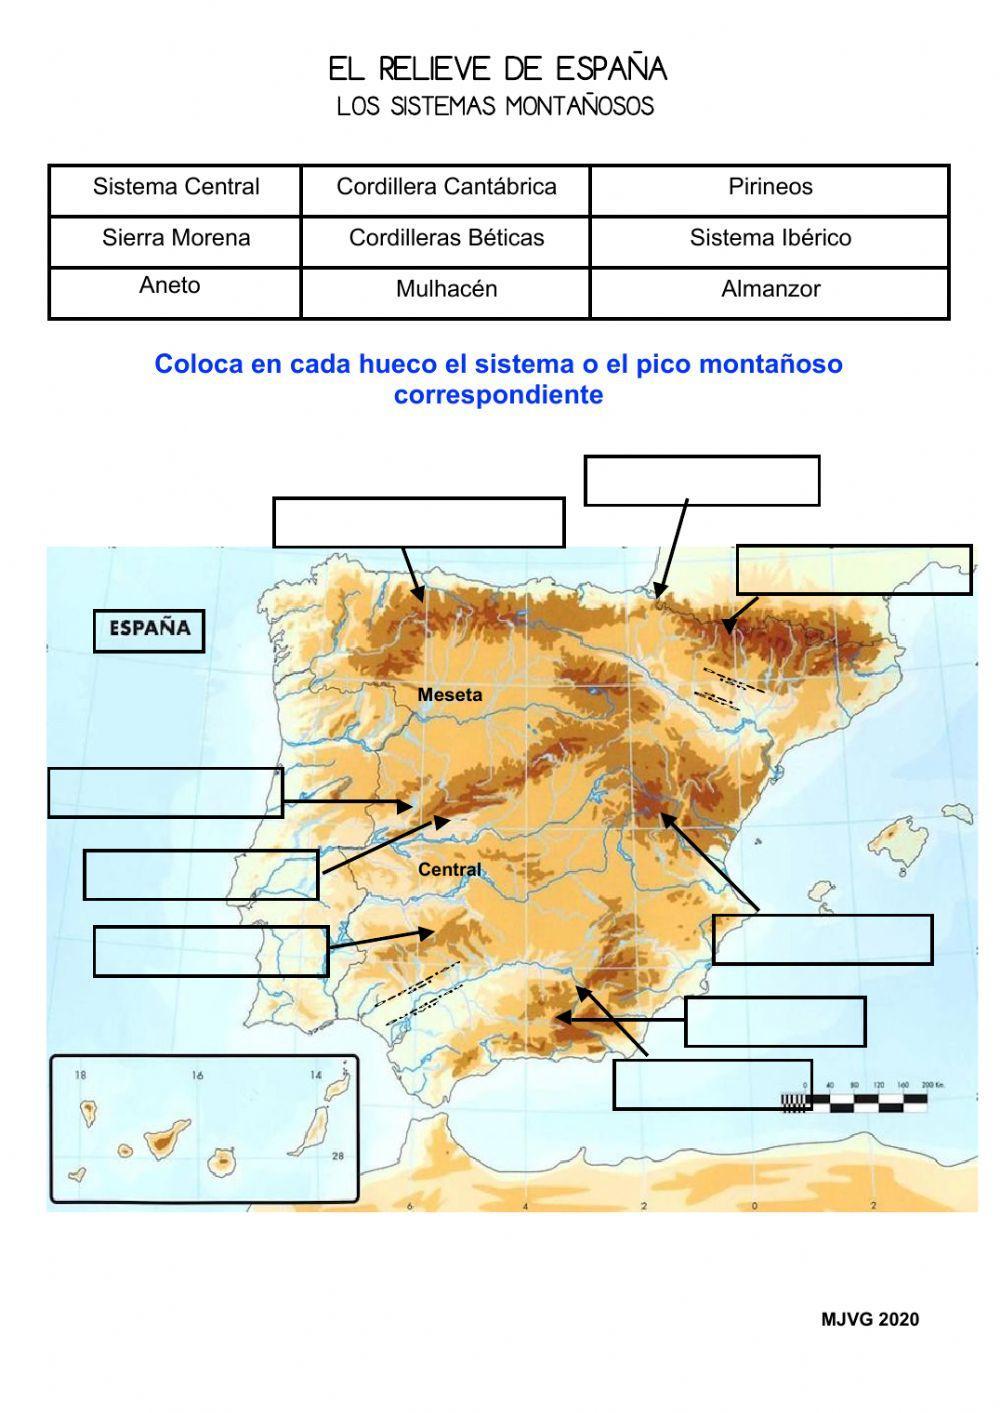 Los sistemas montañosos de España